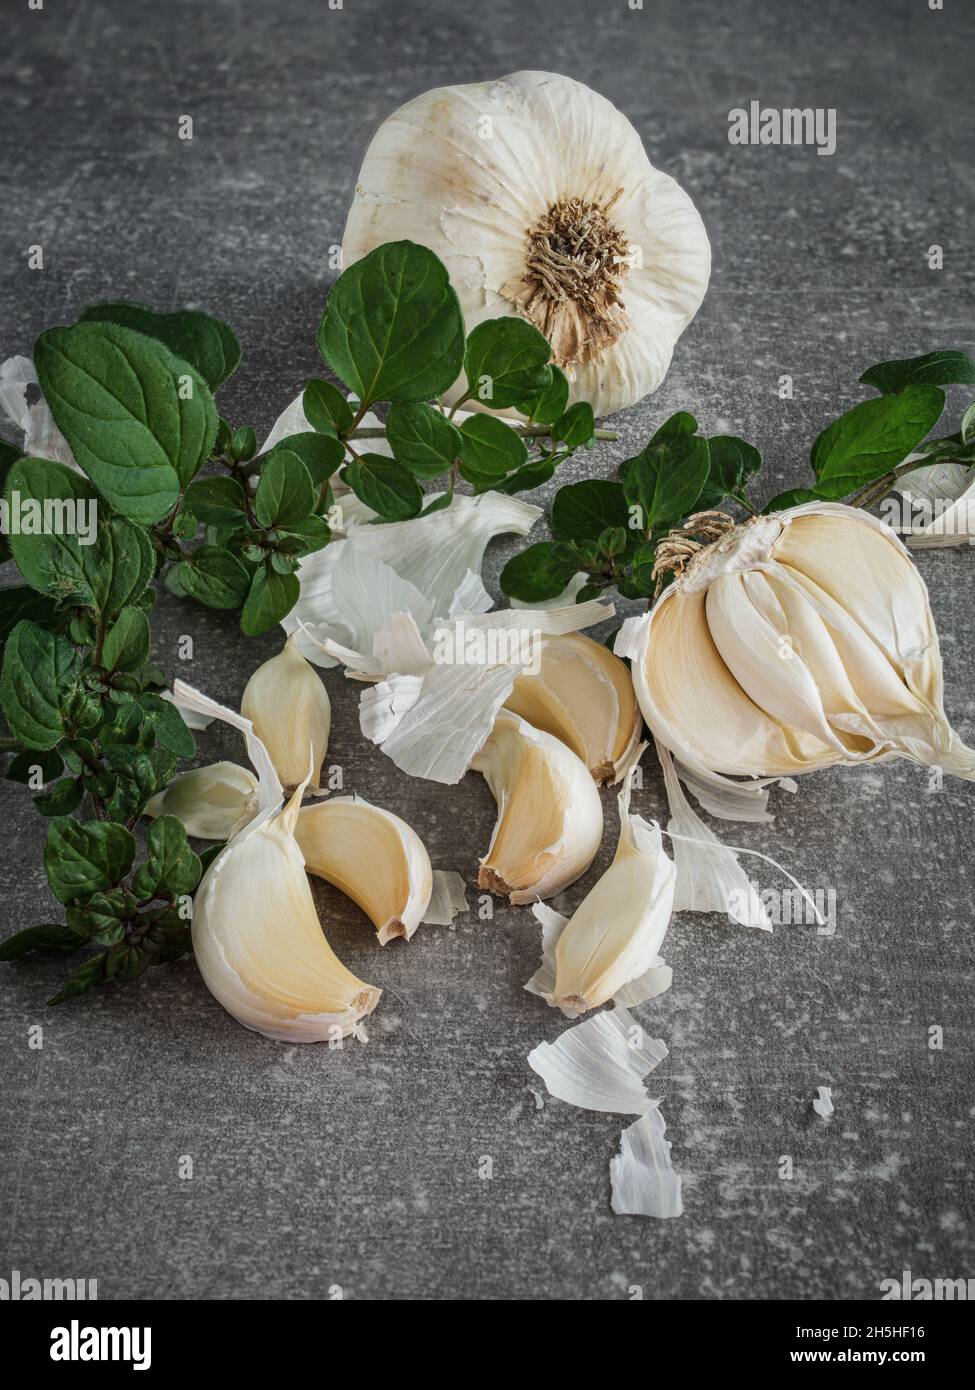 Bulbi di aglio (allio) e foglie di origano fresco su sfondo scuro. Spazio di copia. Foto Stock